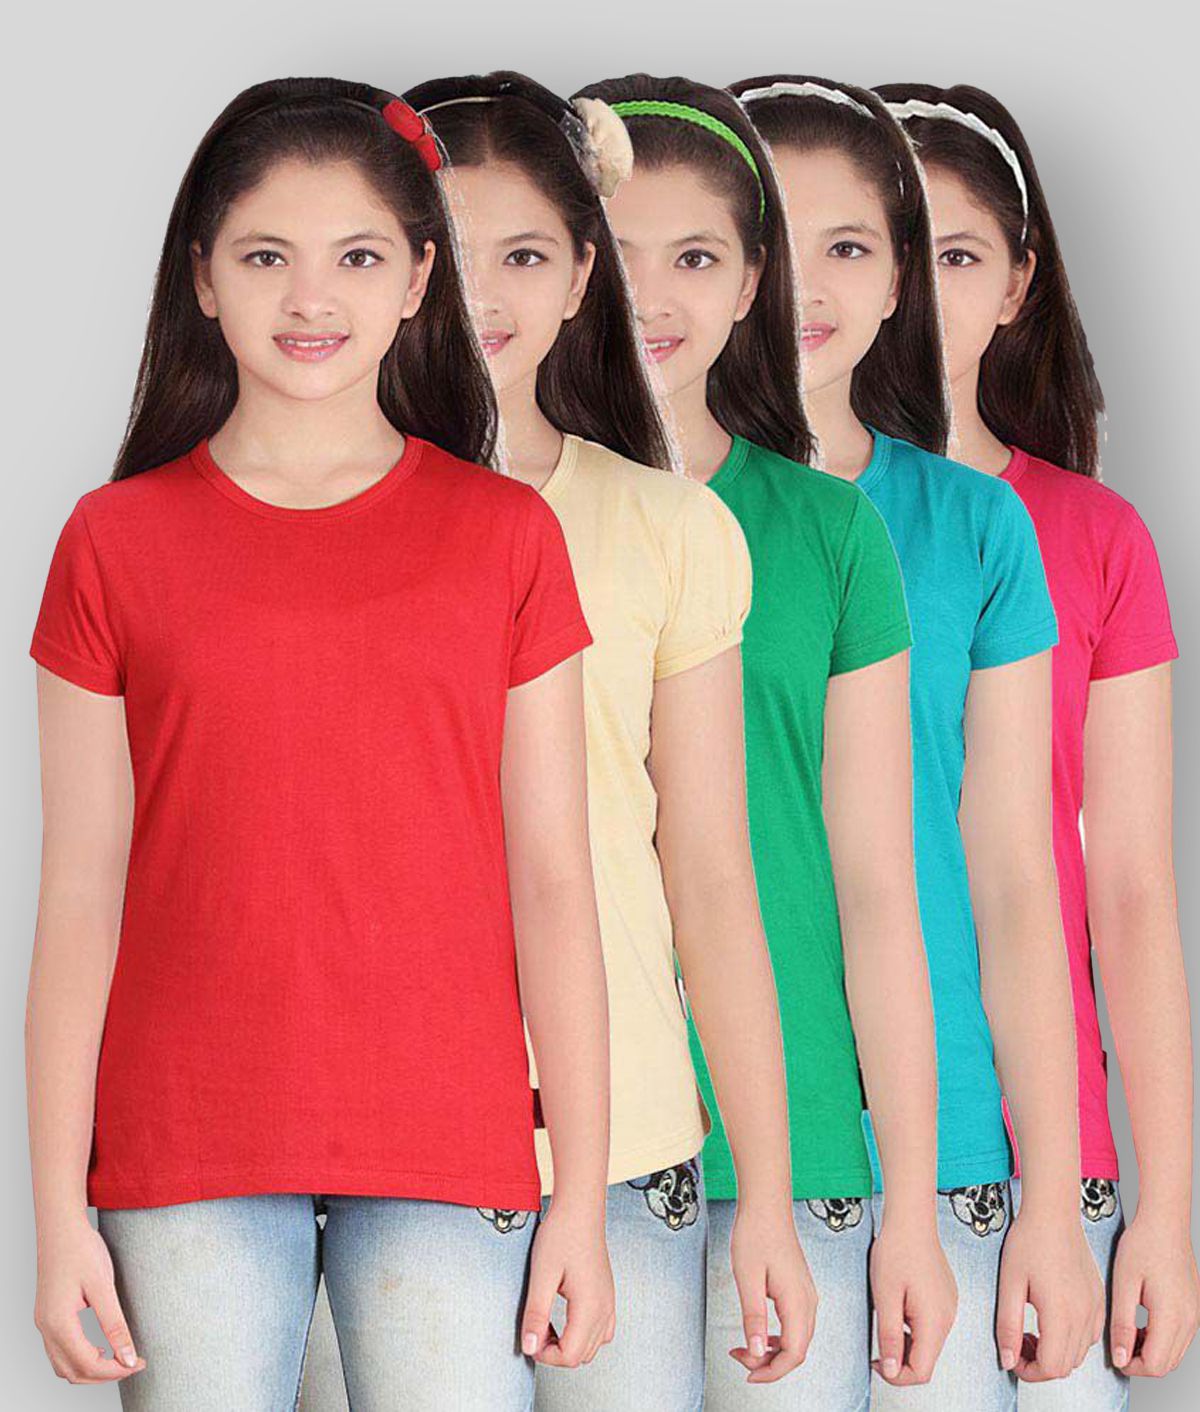     			Sini Mini - Multicolor Cotton Girl's Top ( Pack of 5 )